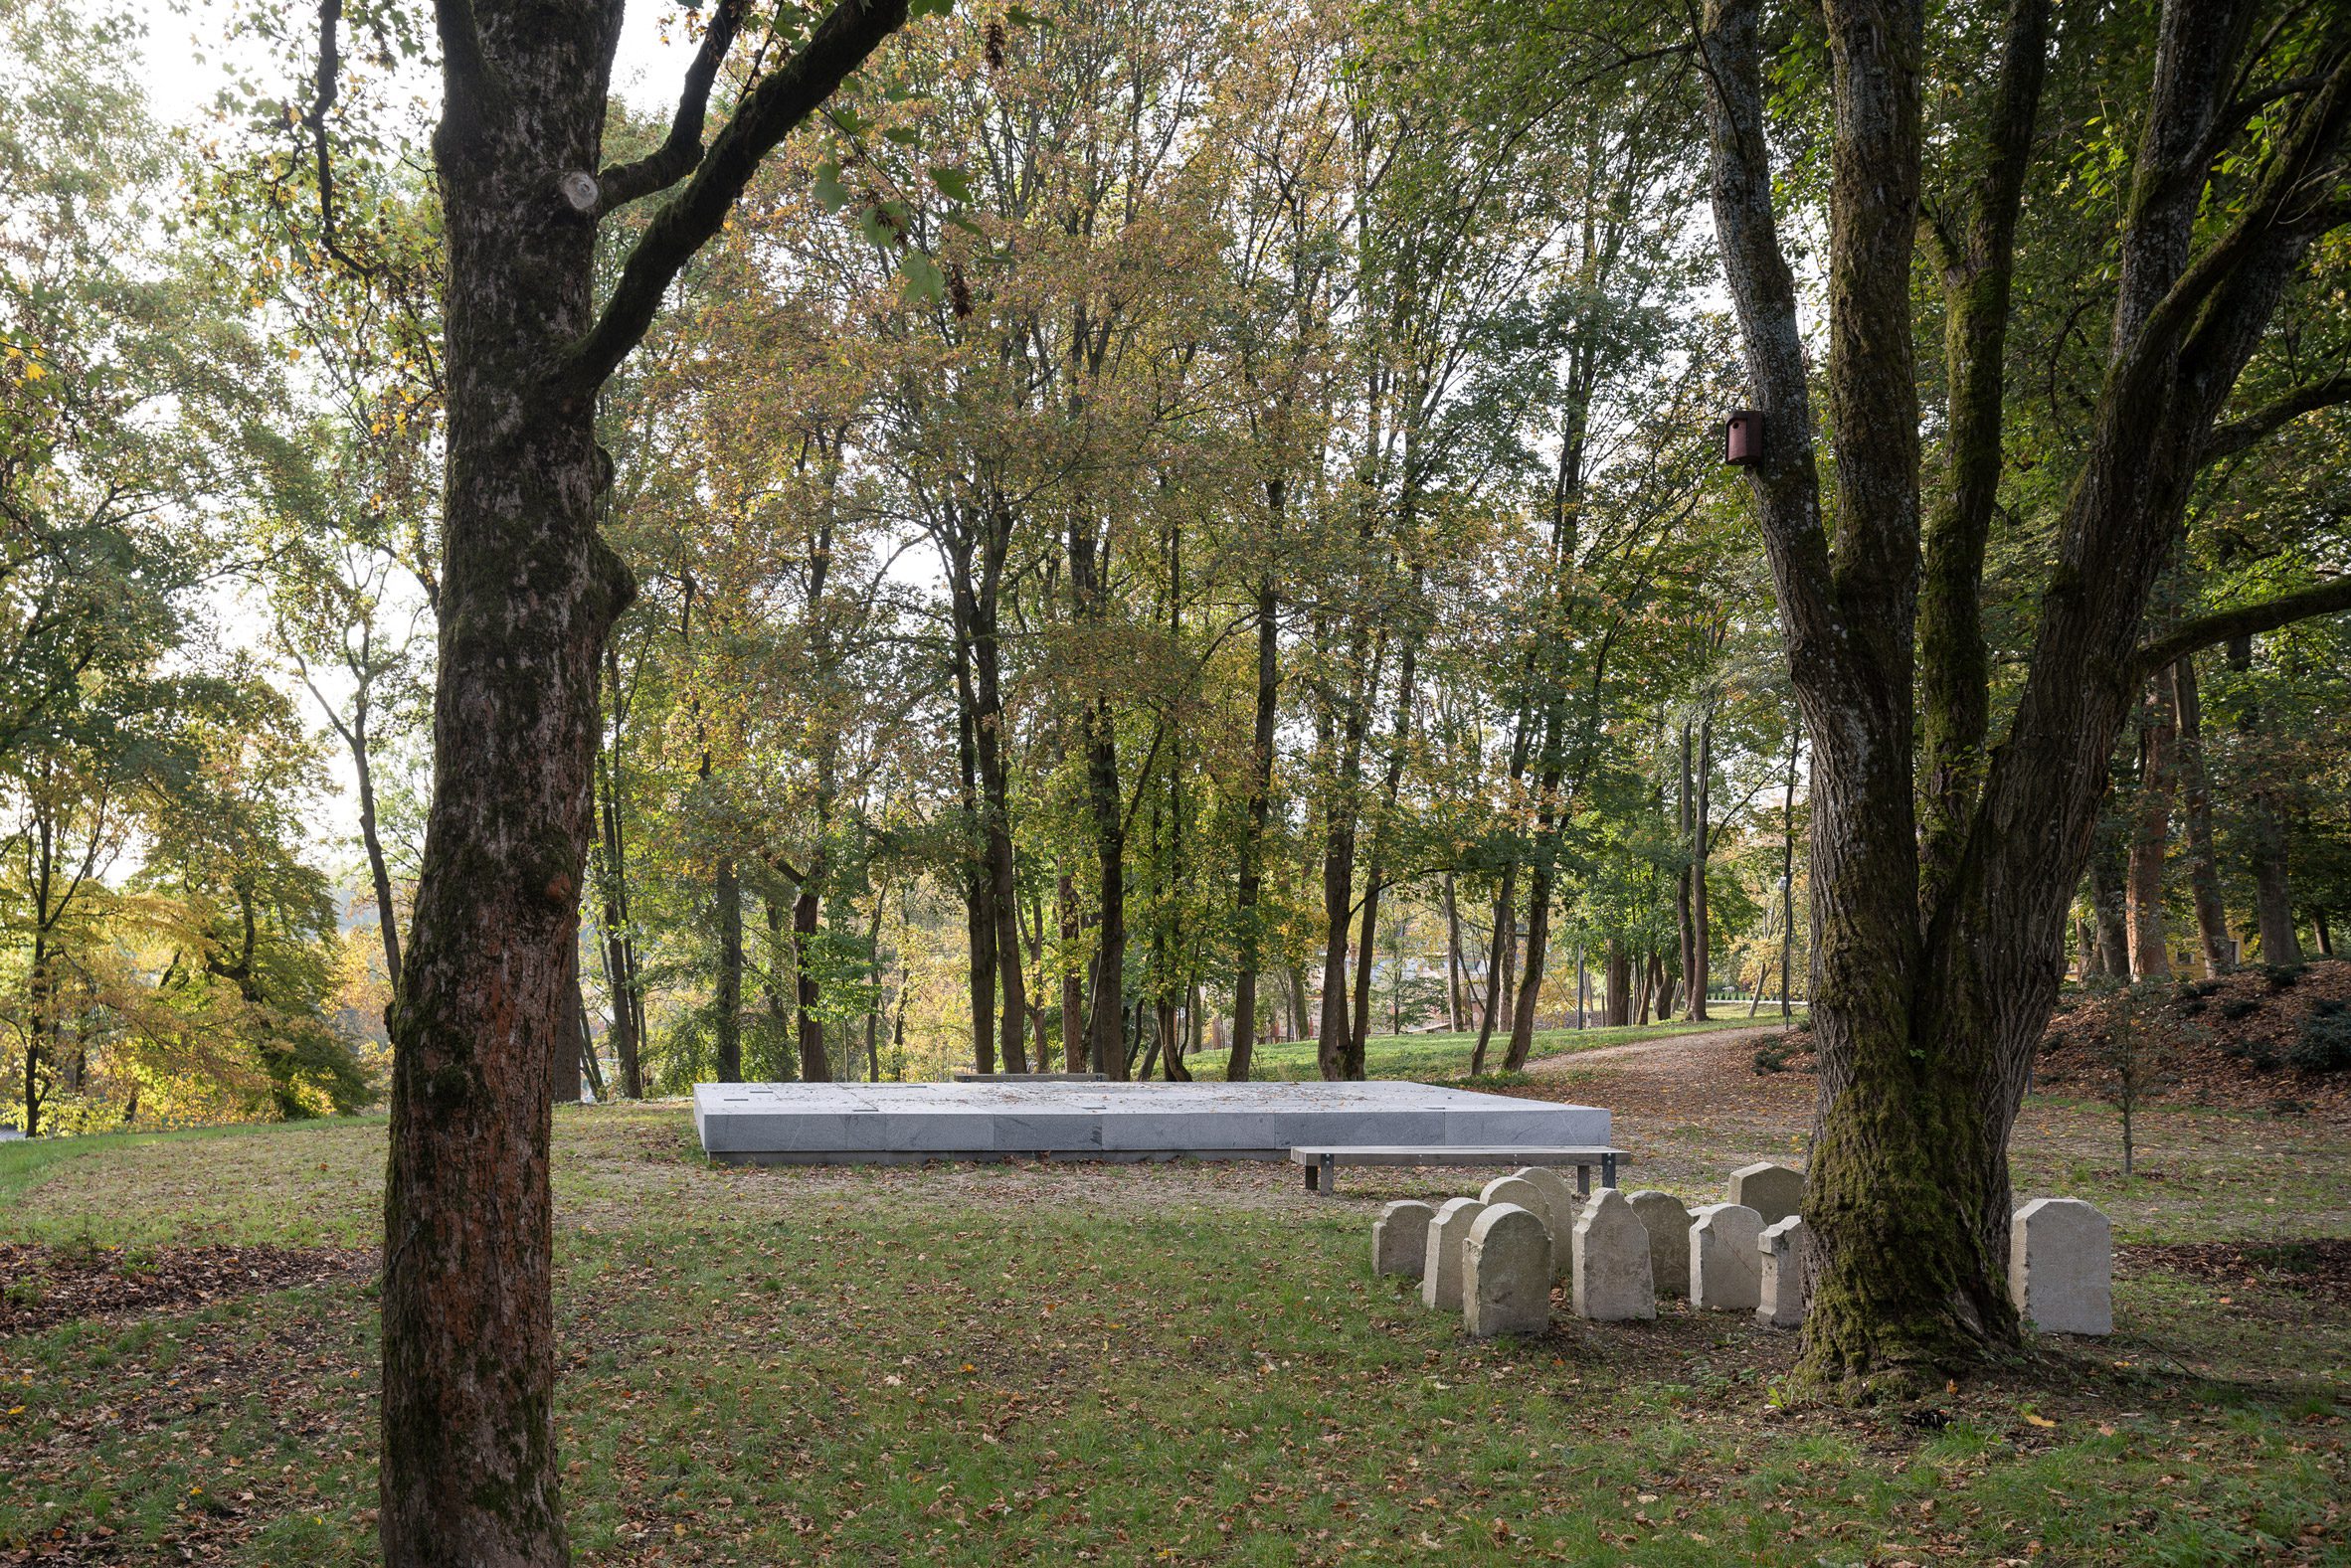 Park with granite sculpture